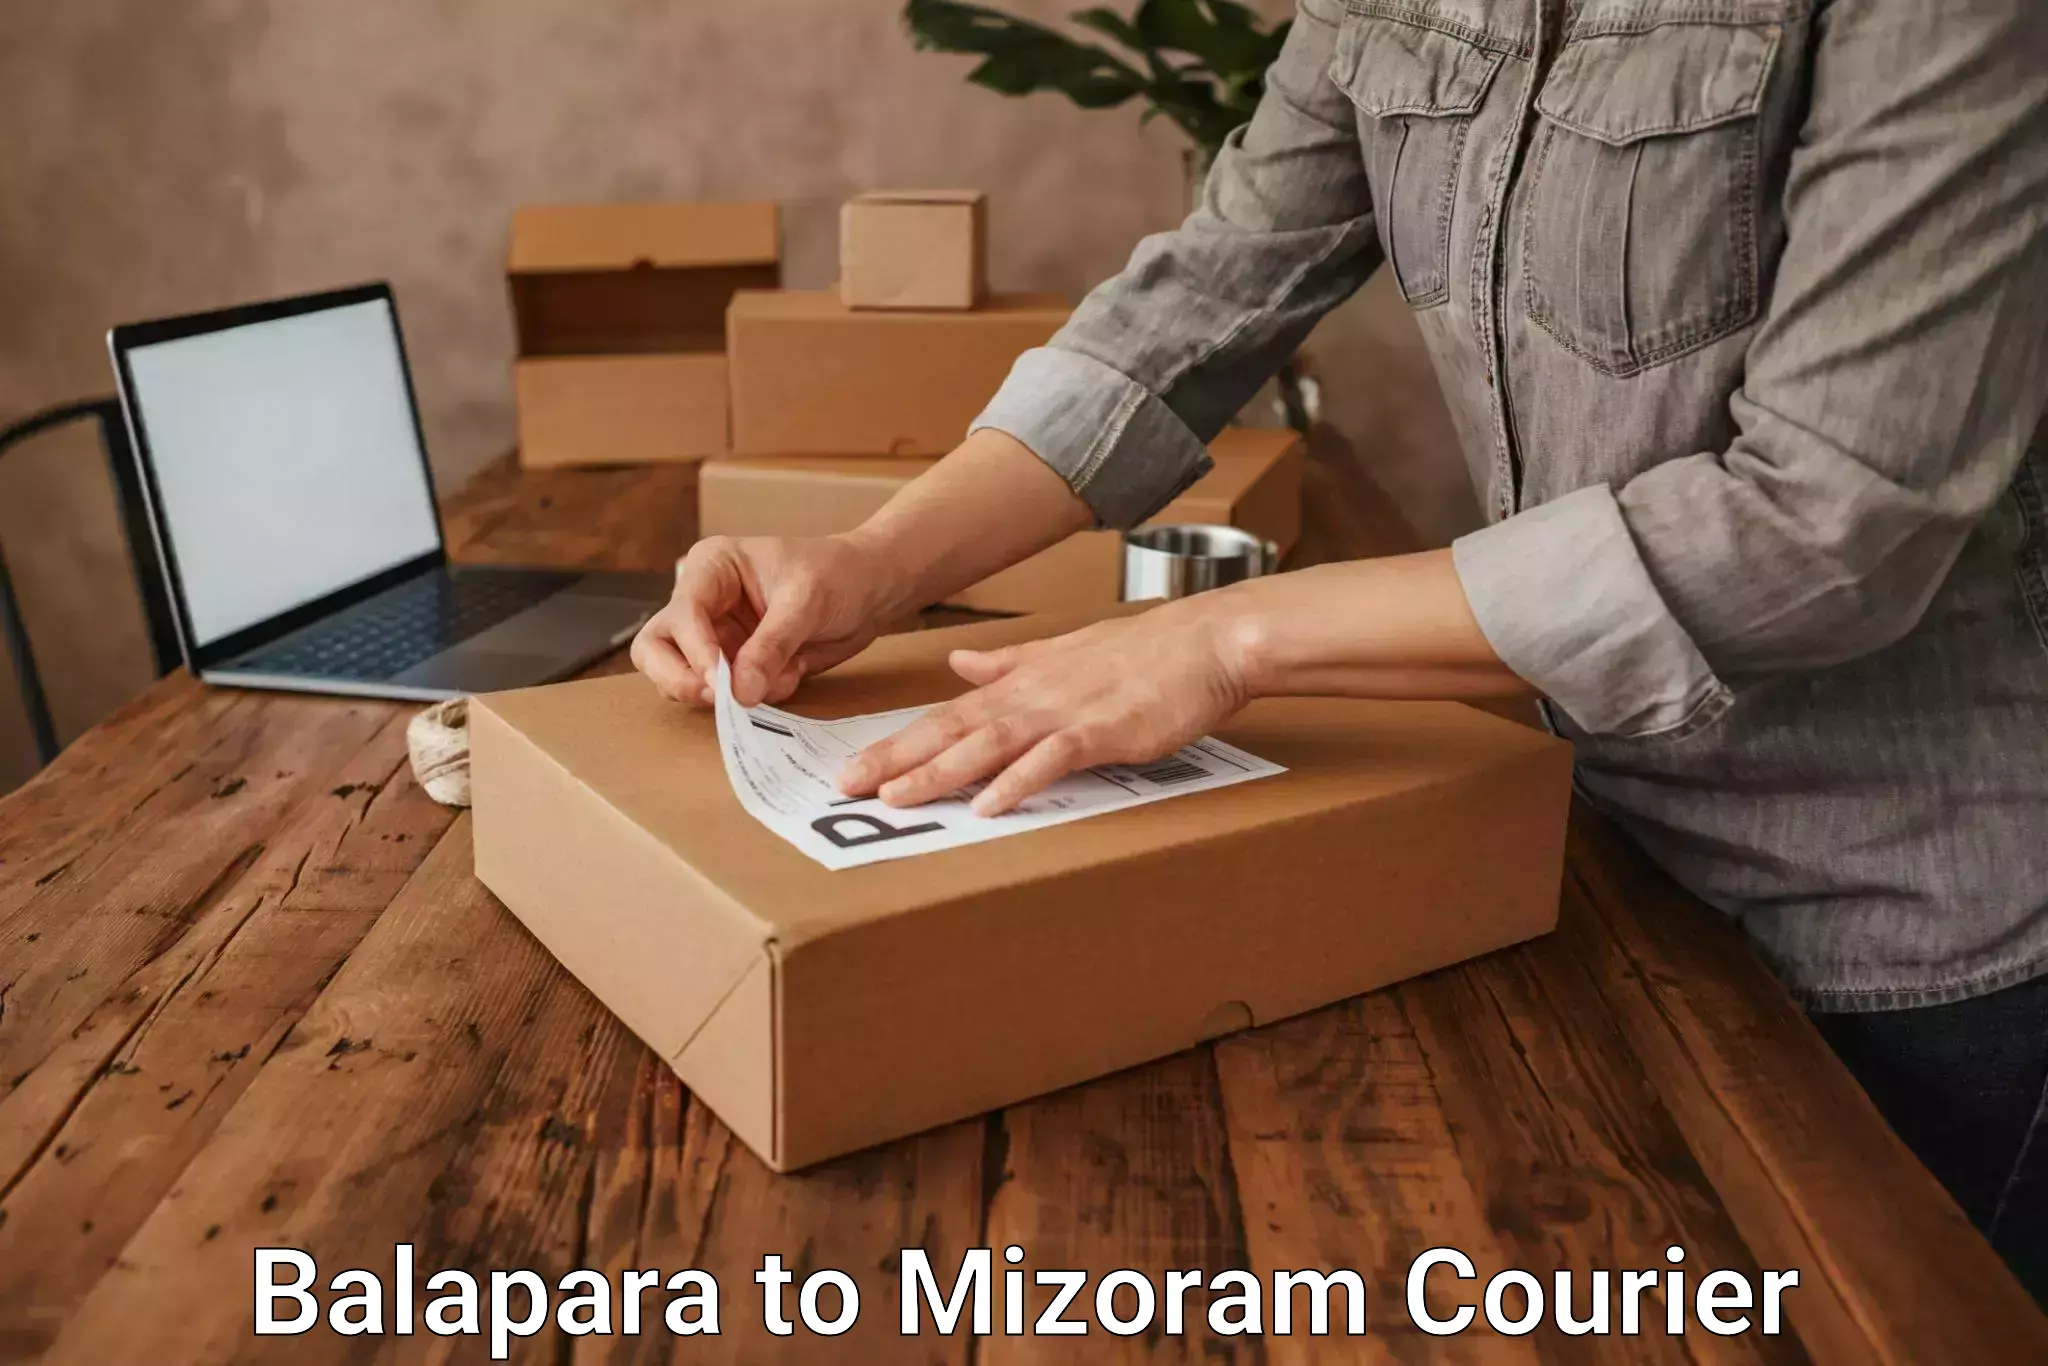 Next-day freight services Balapara to Mizoram